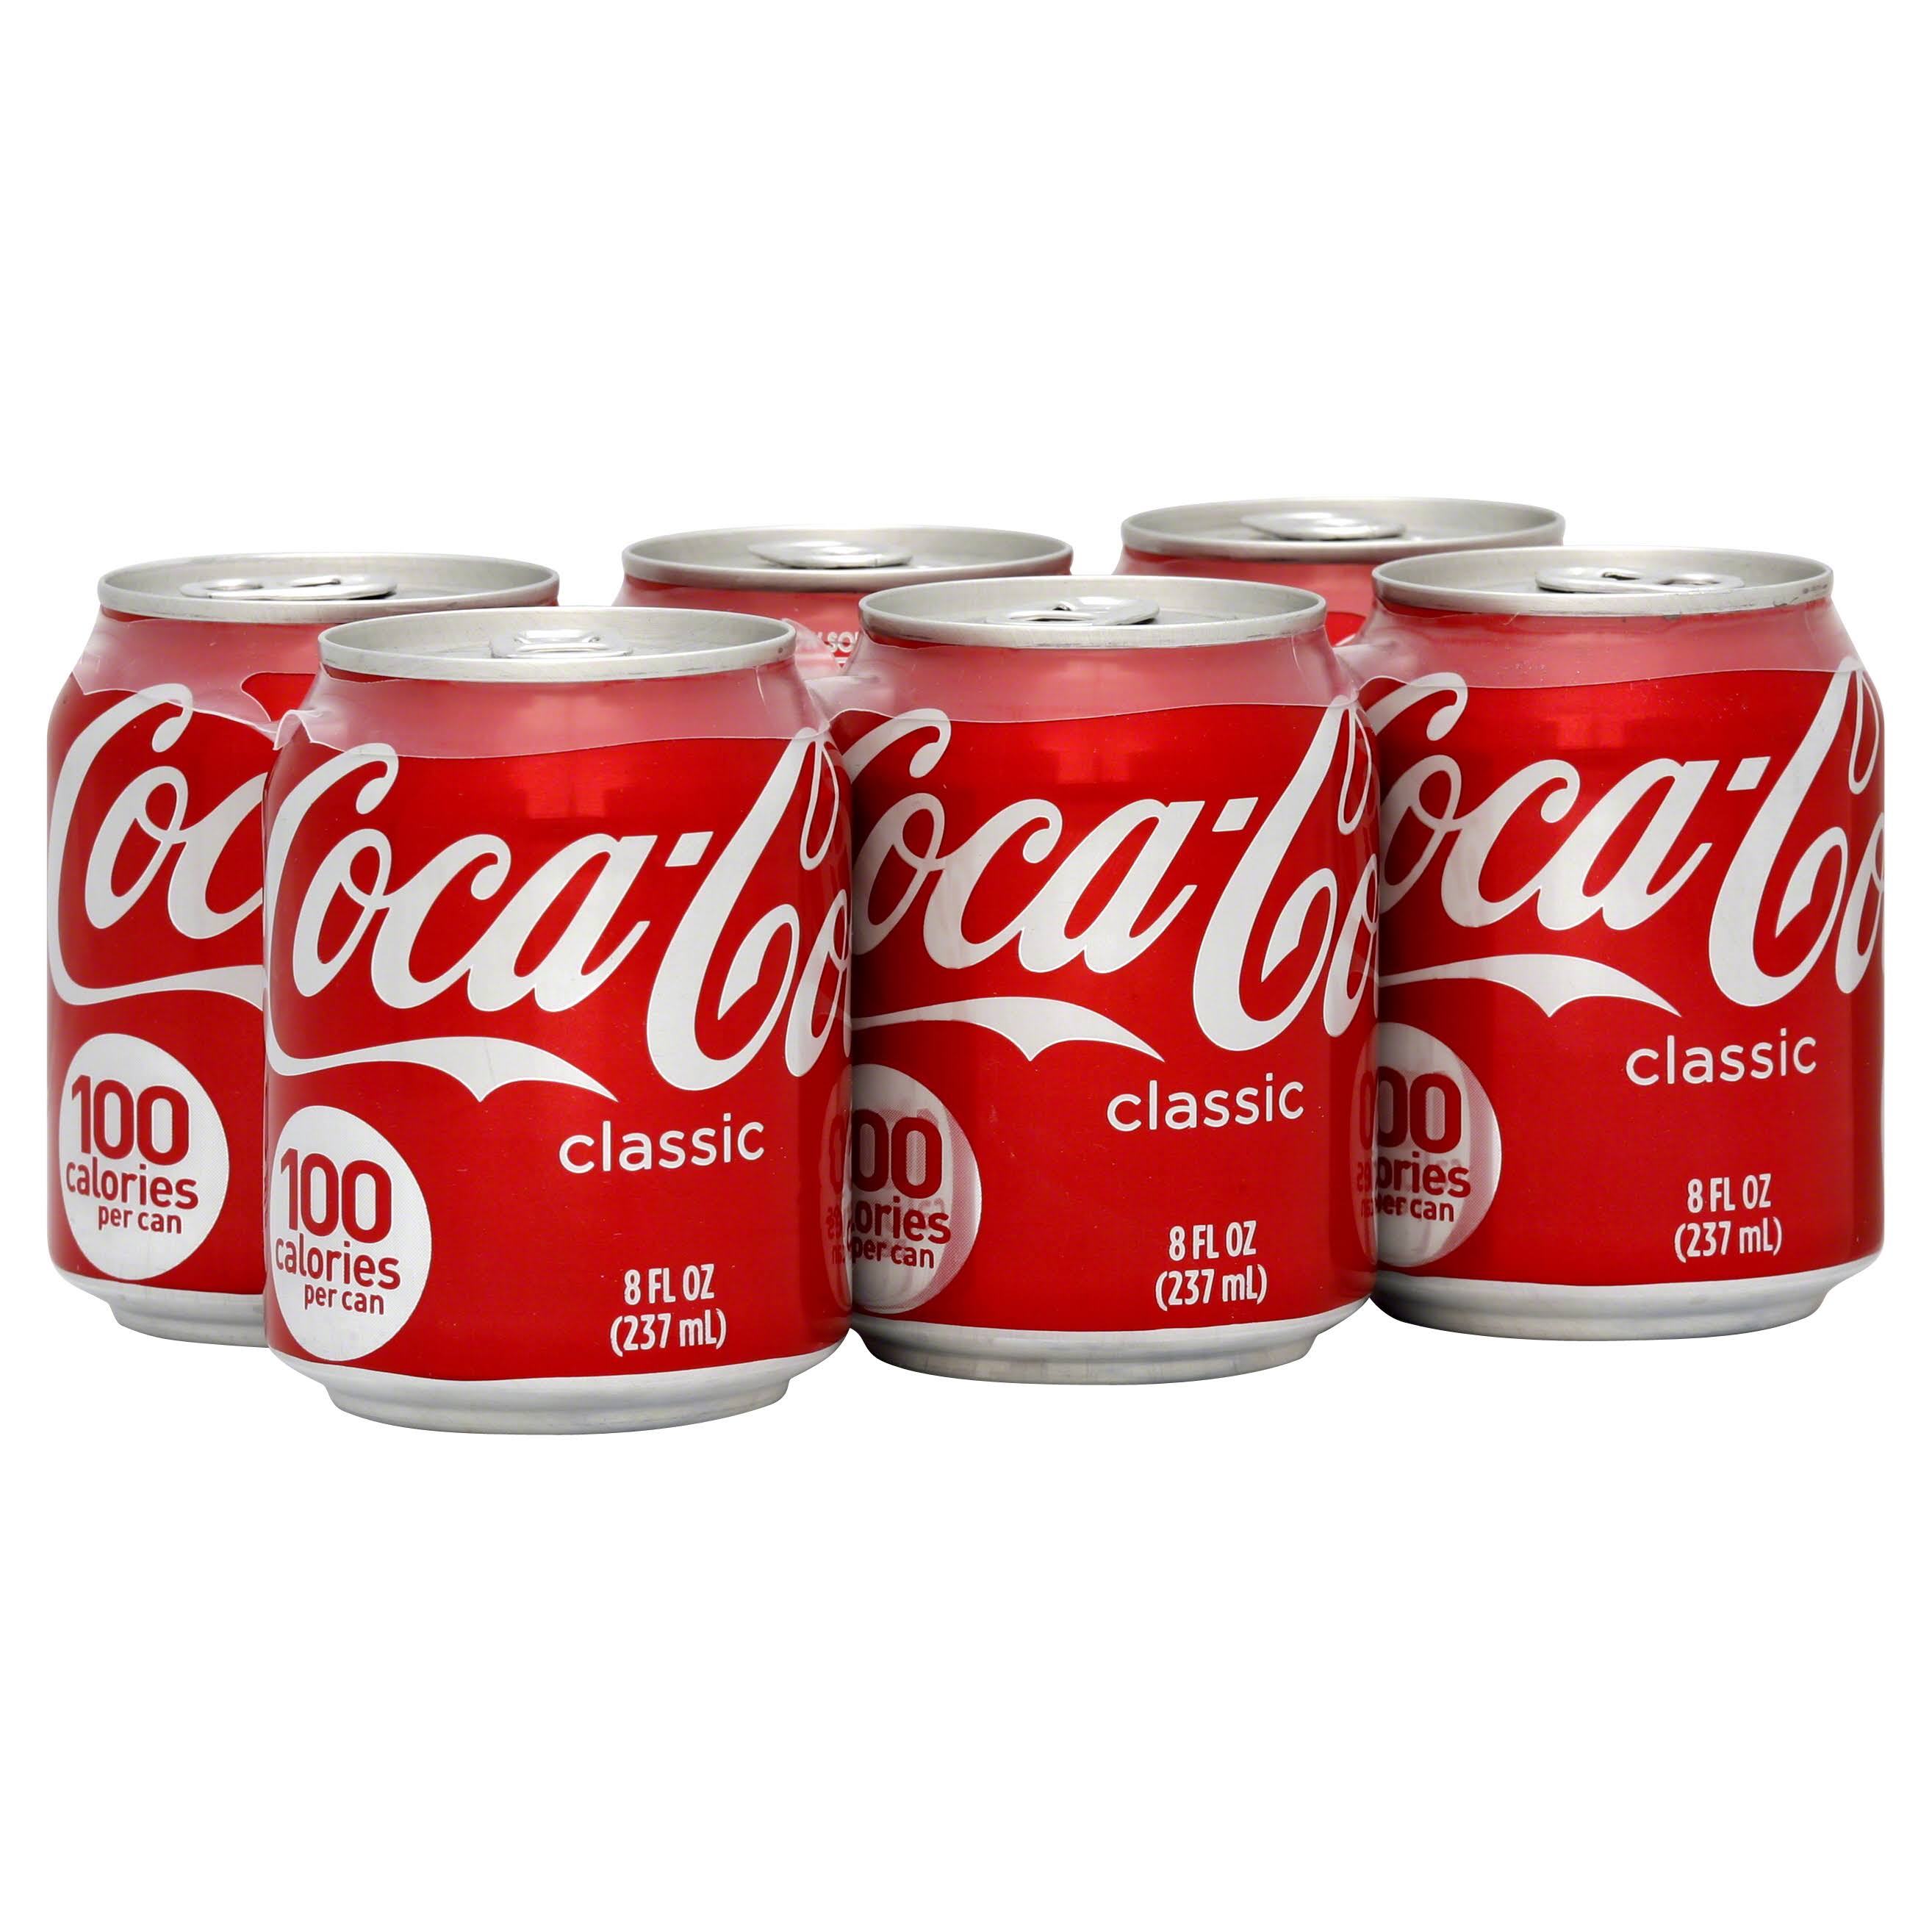 Coca Cola Classic Cola - 6 pack, 8 fl oz cans